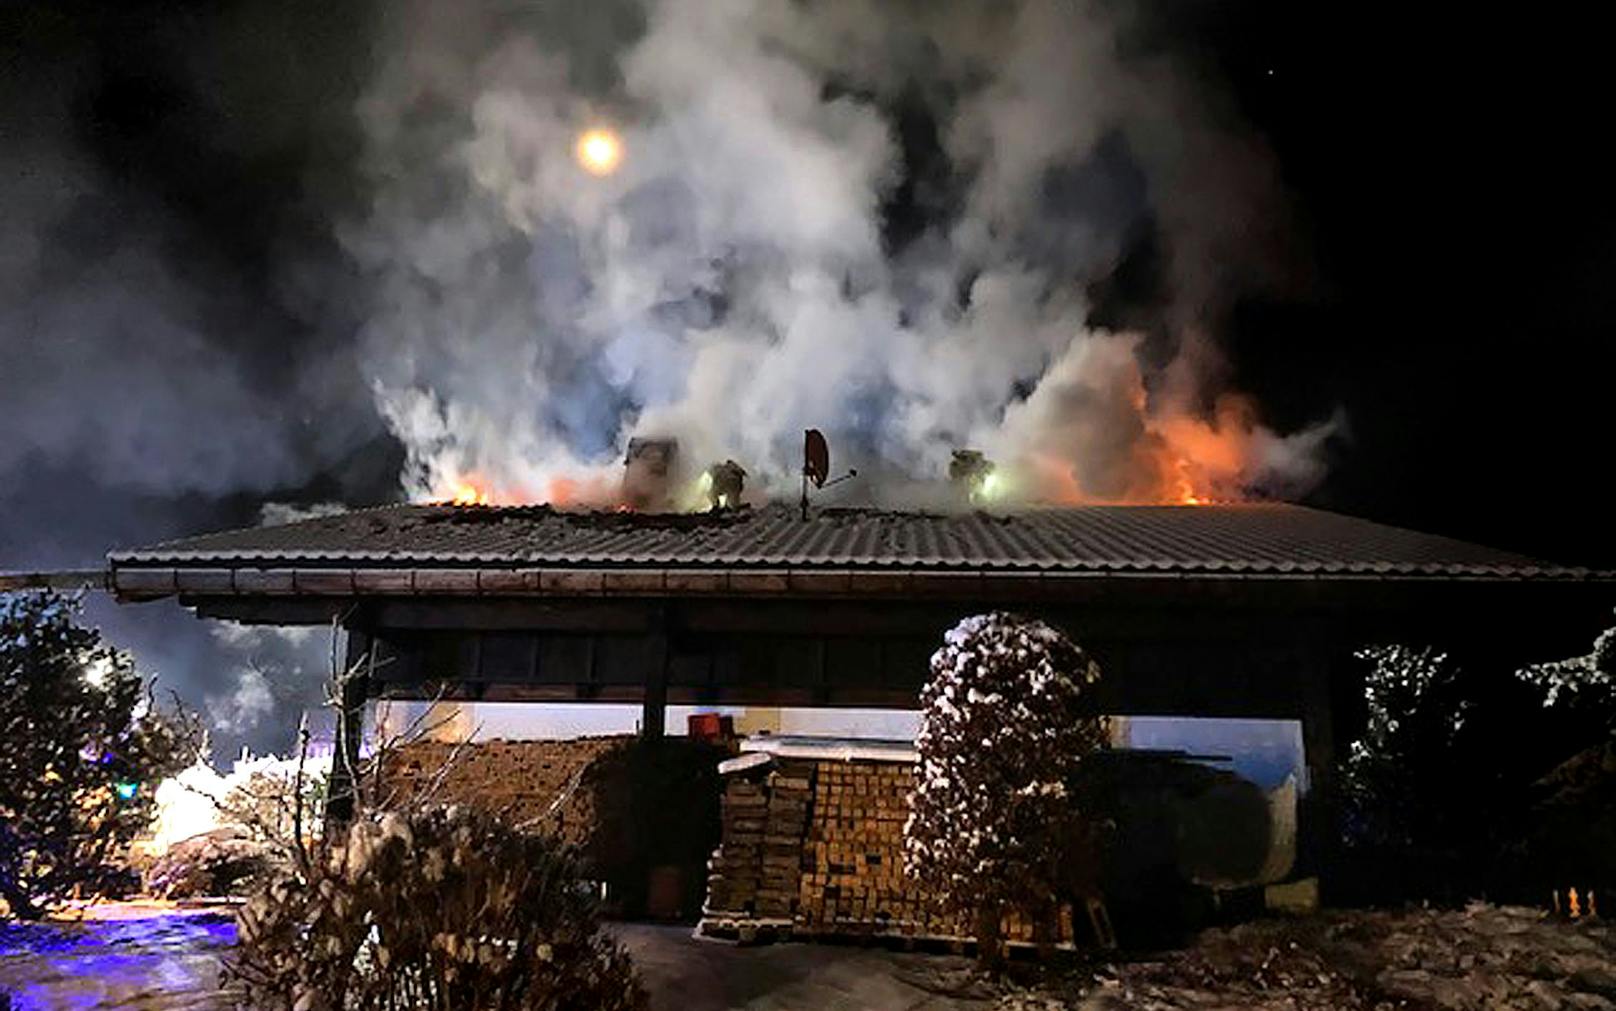 Am Dachstuhl eines Hauses in Elbigenalp brach am Montag gegen 23.00 Uhr laut Polizei aus bisher unbekannter Ursache ein Brand aus.